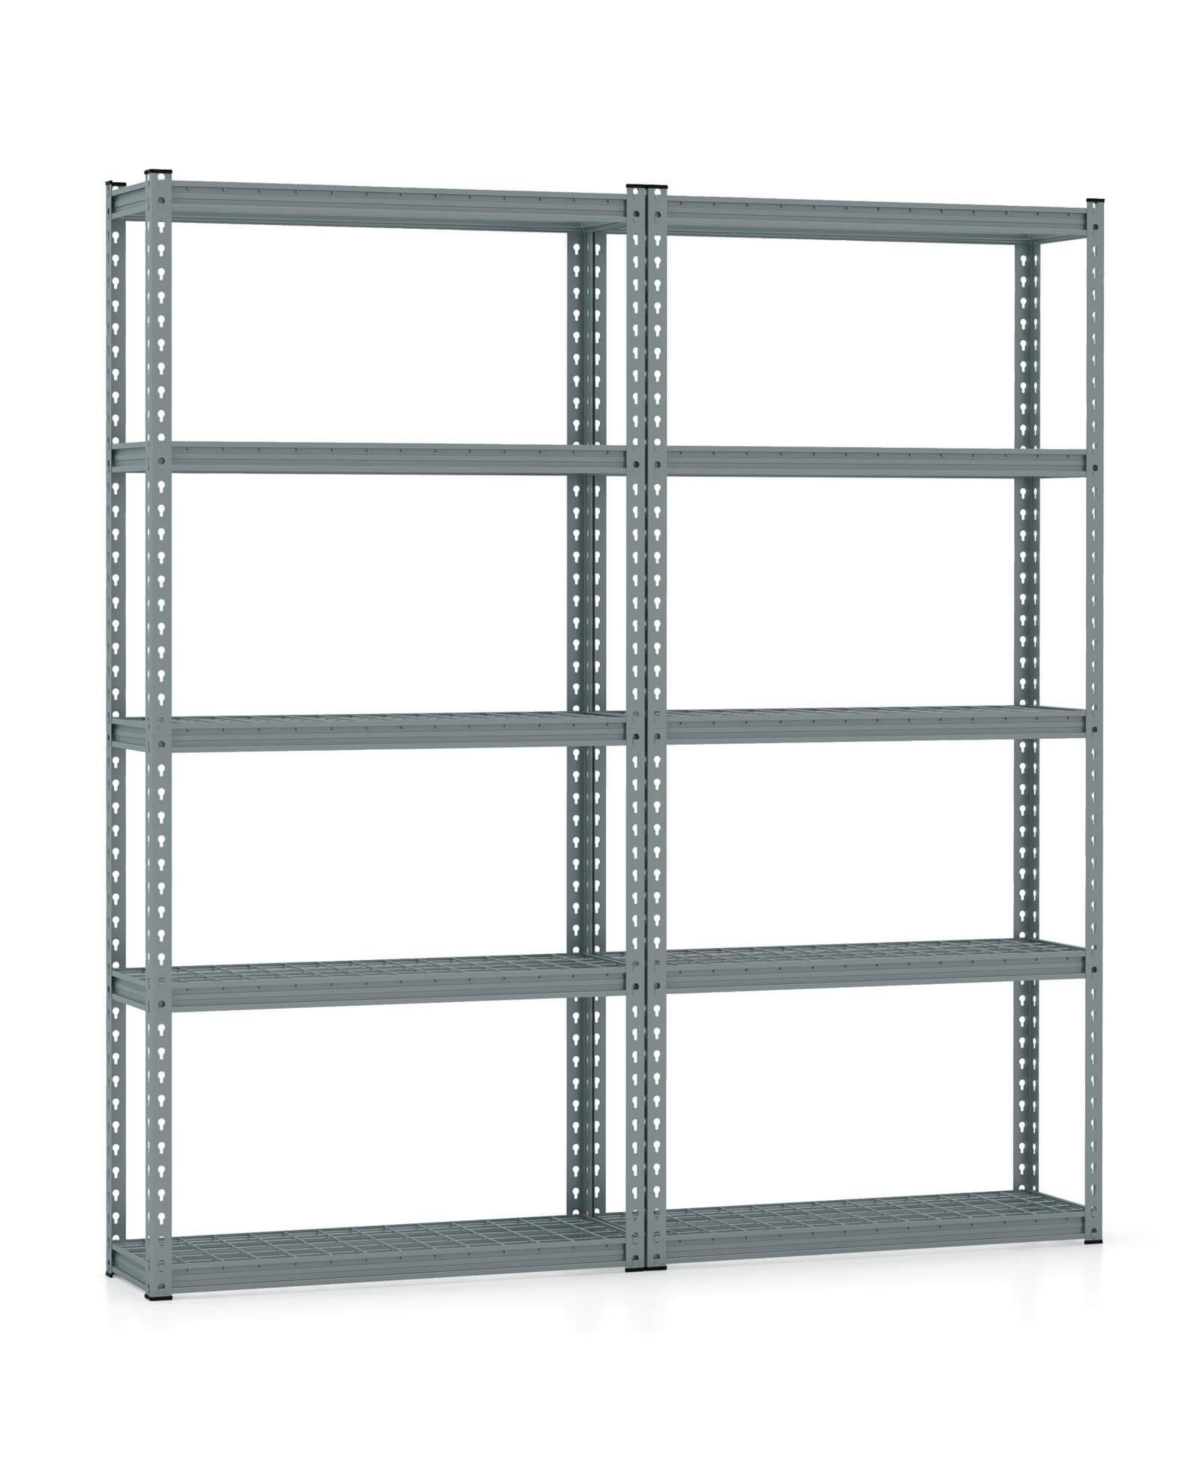 4 Pcs 5-Tier Heavy Duty Storage Shelf Storage Utility Rack Shelf with Anti-tipping Device - Grey